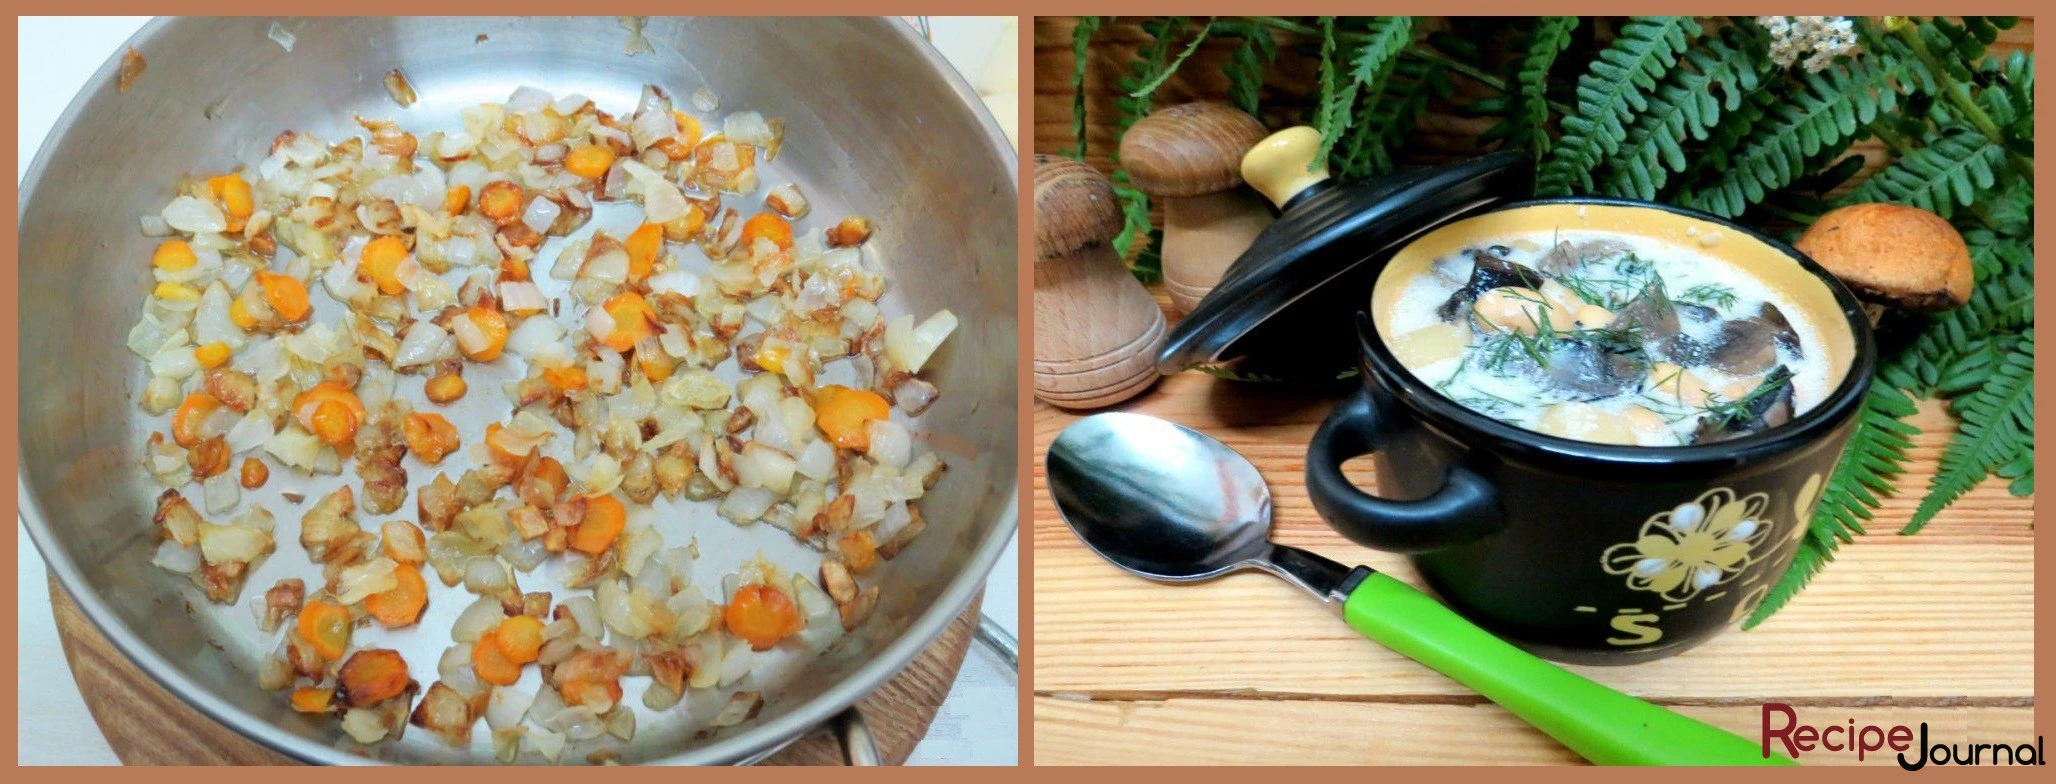 Пока варится суп, делаем зажарку. Лук и морковь обжариваем в растительном масле, пока лук не станет прозрачным. Заправляем суп зажаркой, солим, перчим и добавляем  измельченный чеснок. Мелко нарезанную зелень и сметану добавляем в тарелки. Зимний суп с грибами и фасолью готов!